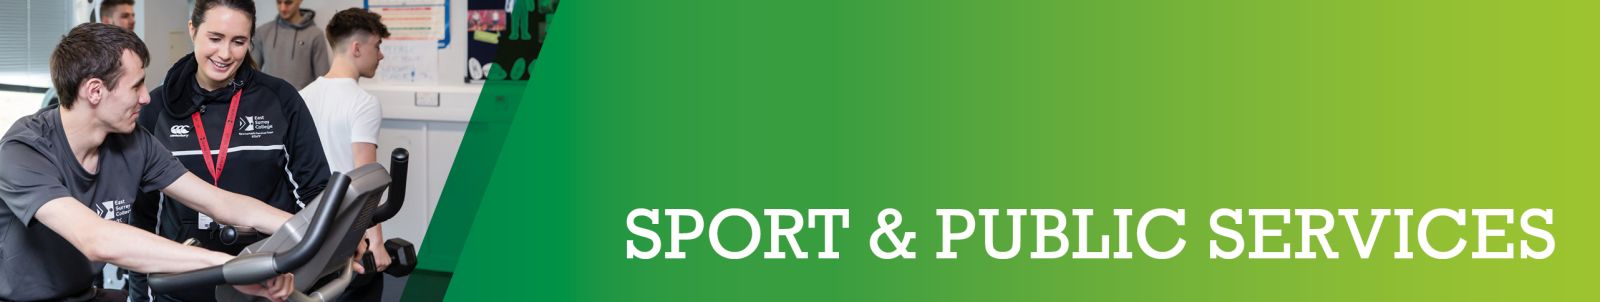 Banner image - Sport & Public Services